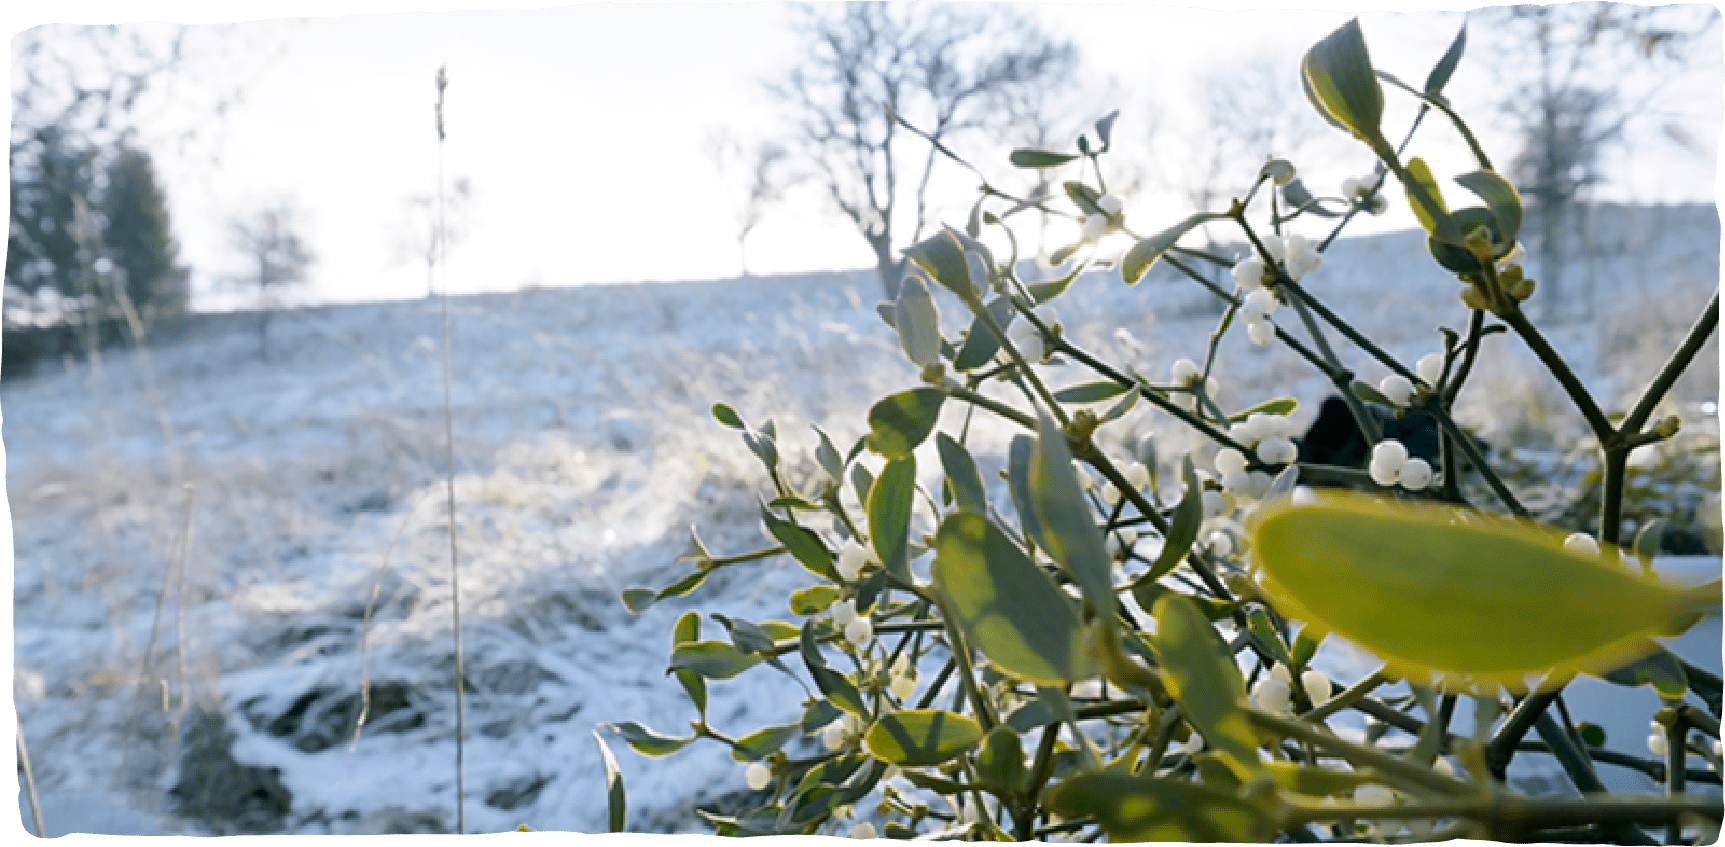 Mistelzweige auf einem verschneiten Hang mit Sonnenschein im Hintergrund